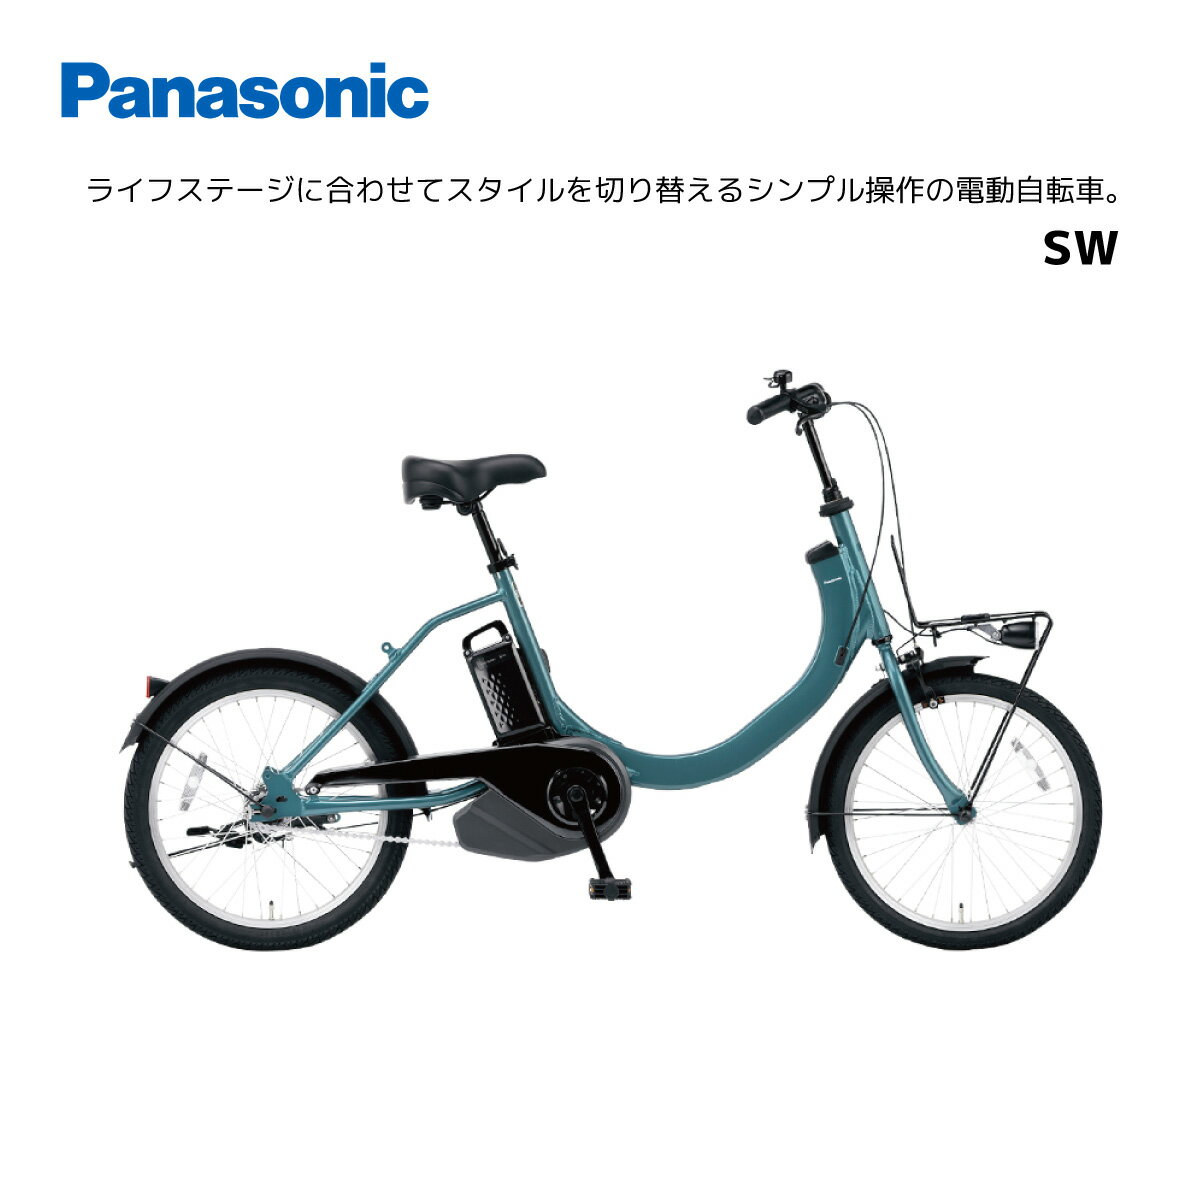 パナソニック SW エスダブル BE-FSW011 20インチ E-BIKE イーバイク 電動自転車 おしゃれ かわいい シ..